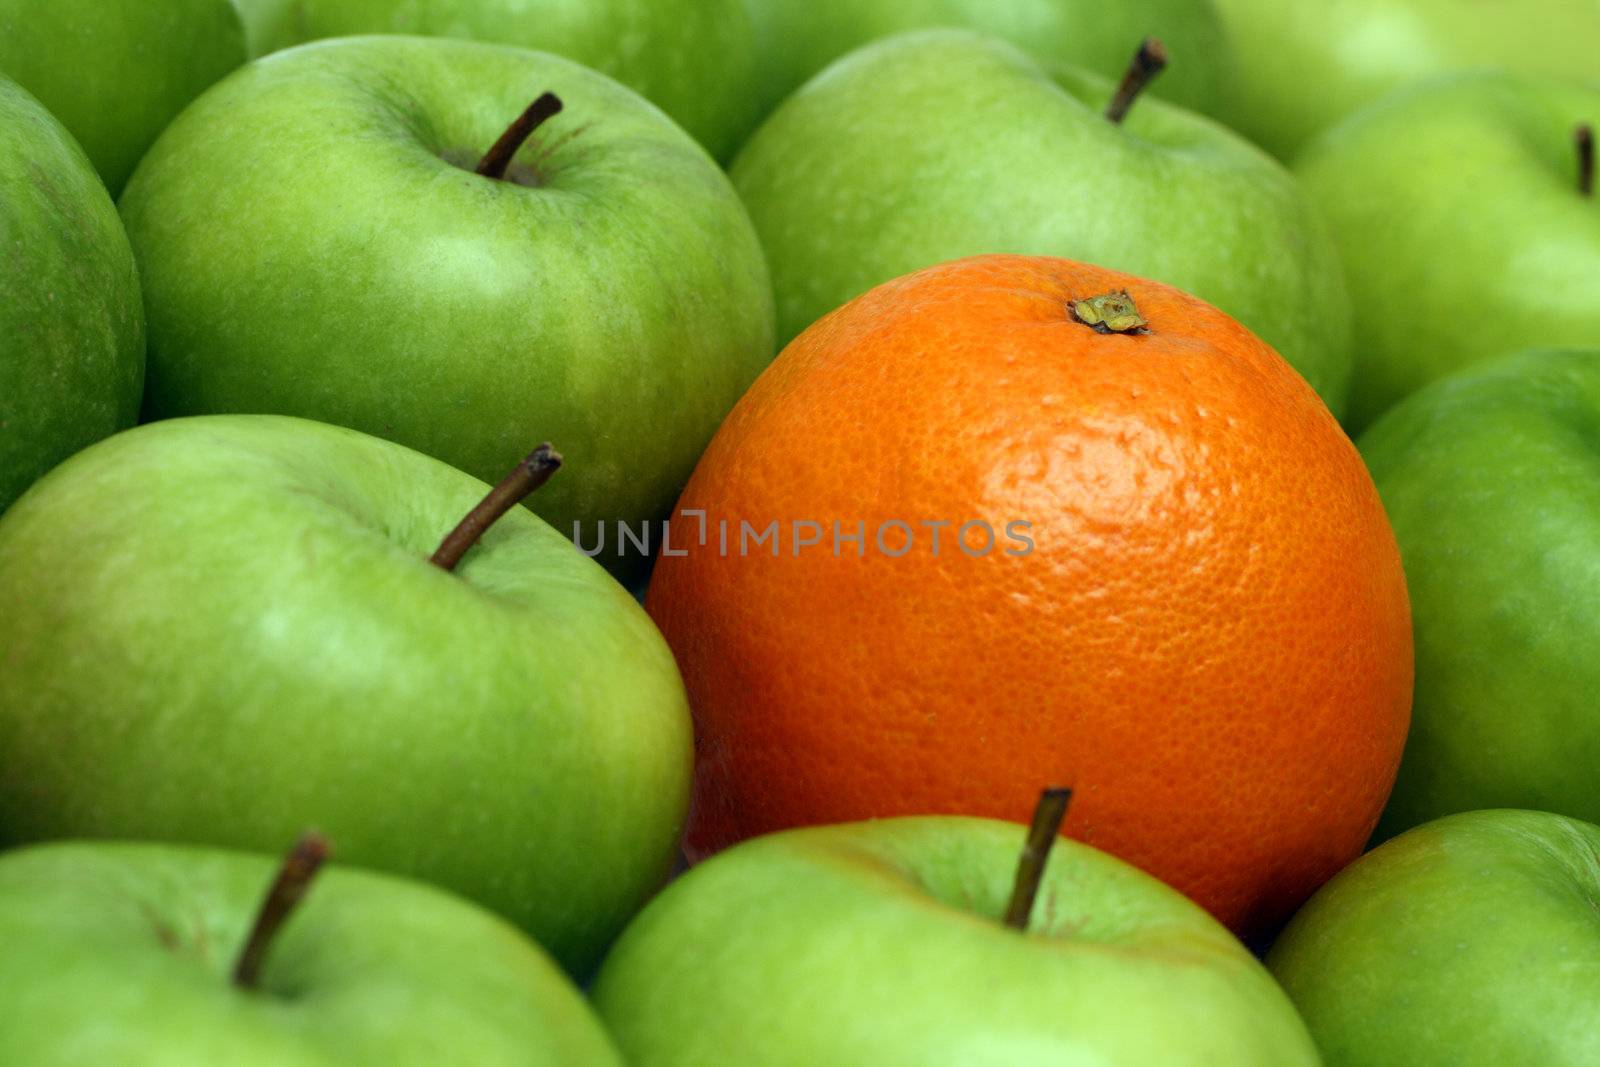 different concepts - orange between green apples